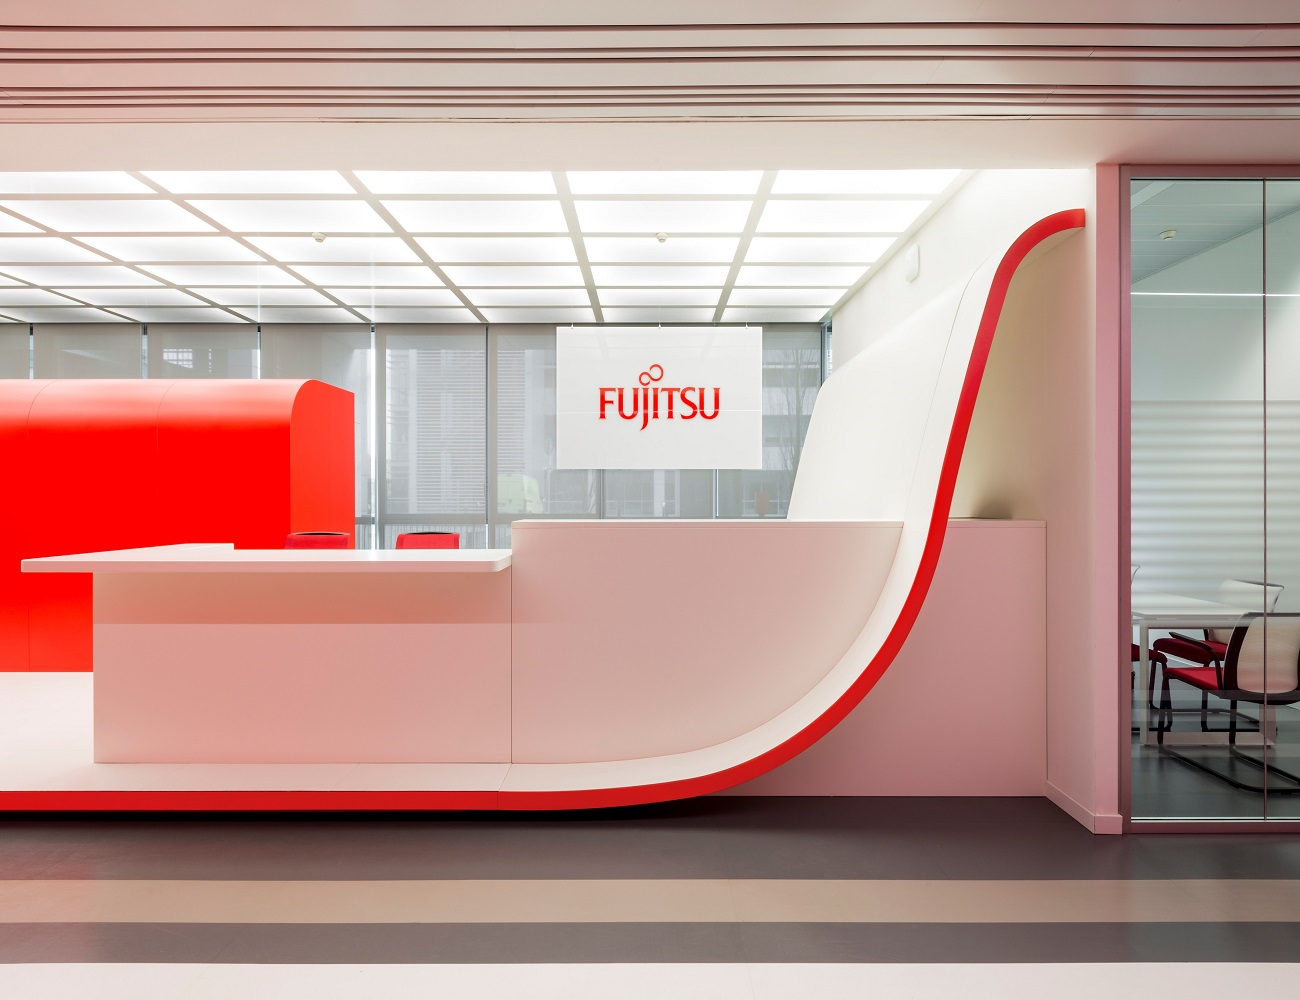 Los errores en el software de contabilidad de Fujitsu que provocaron condenas falsas se conocieron «desde el principio»